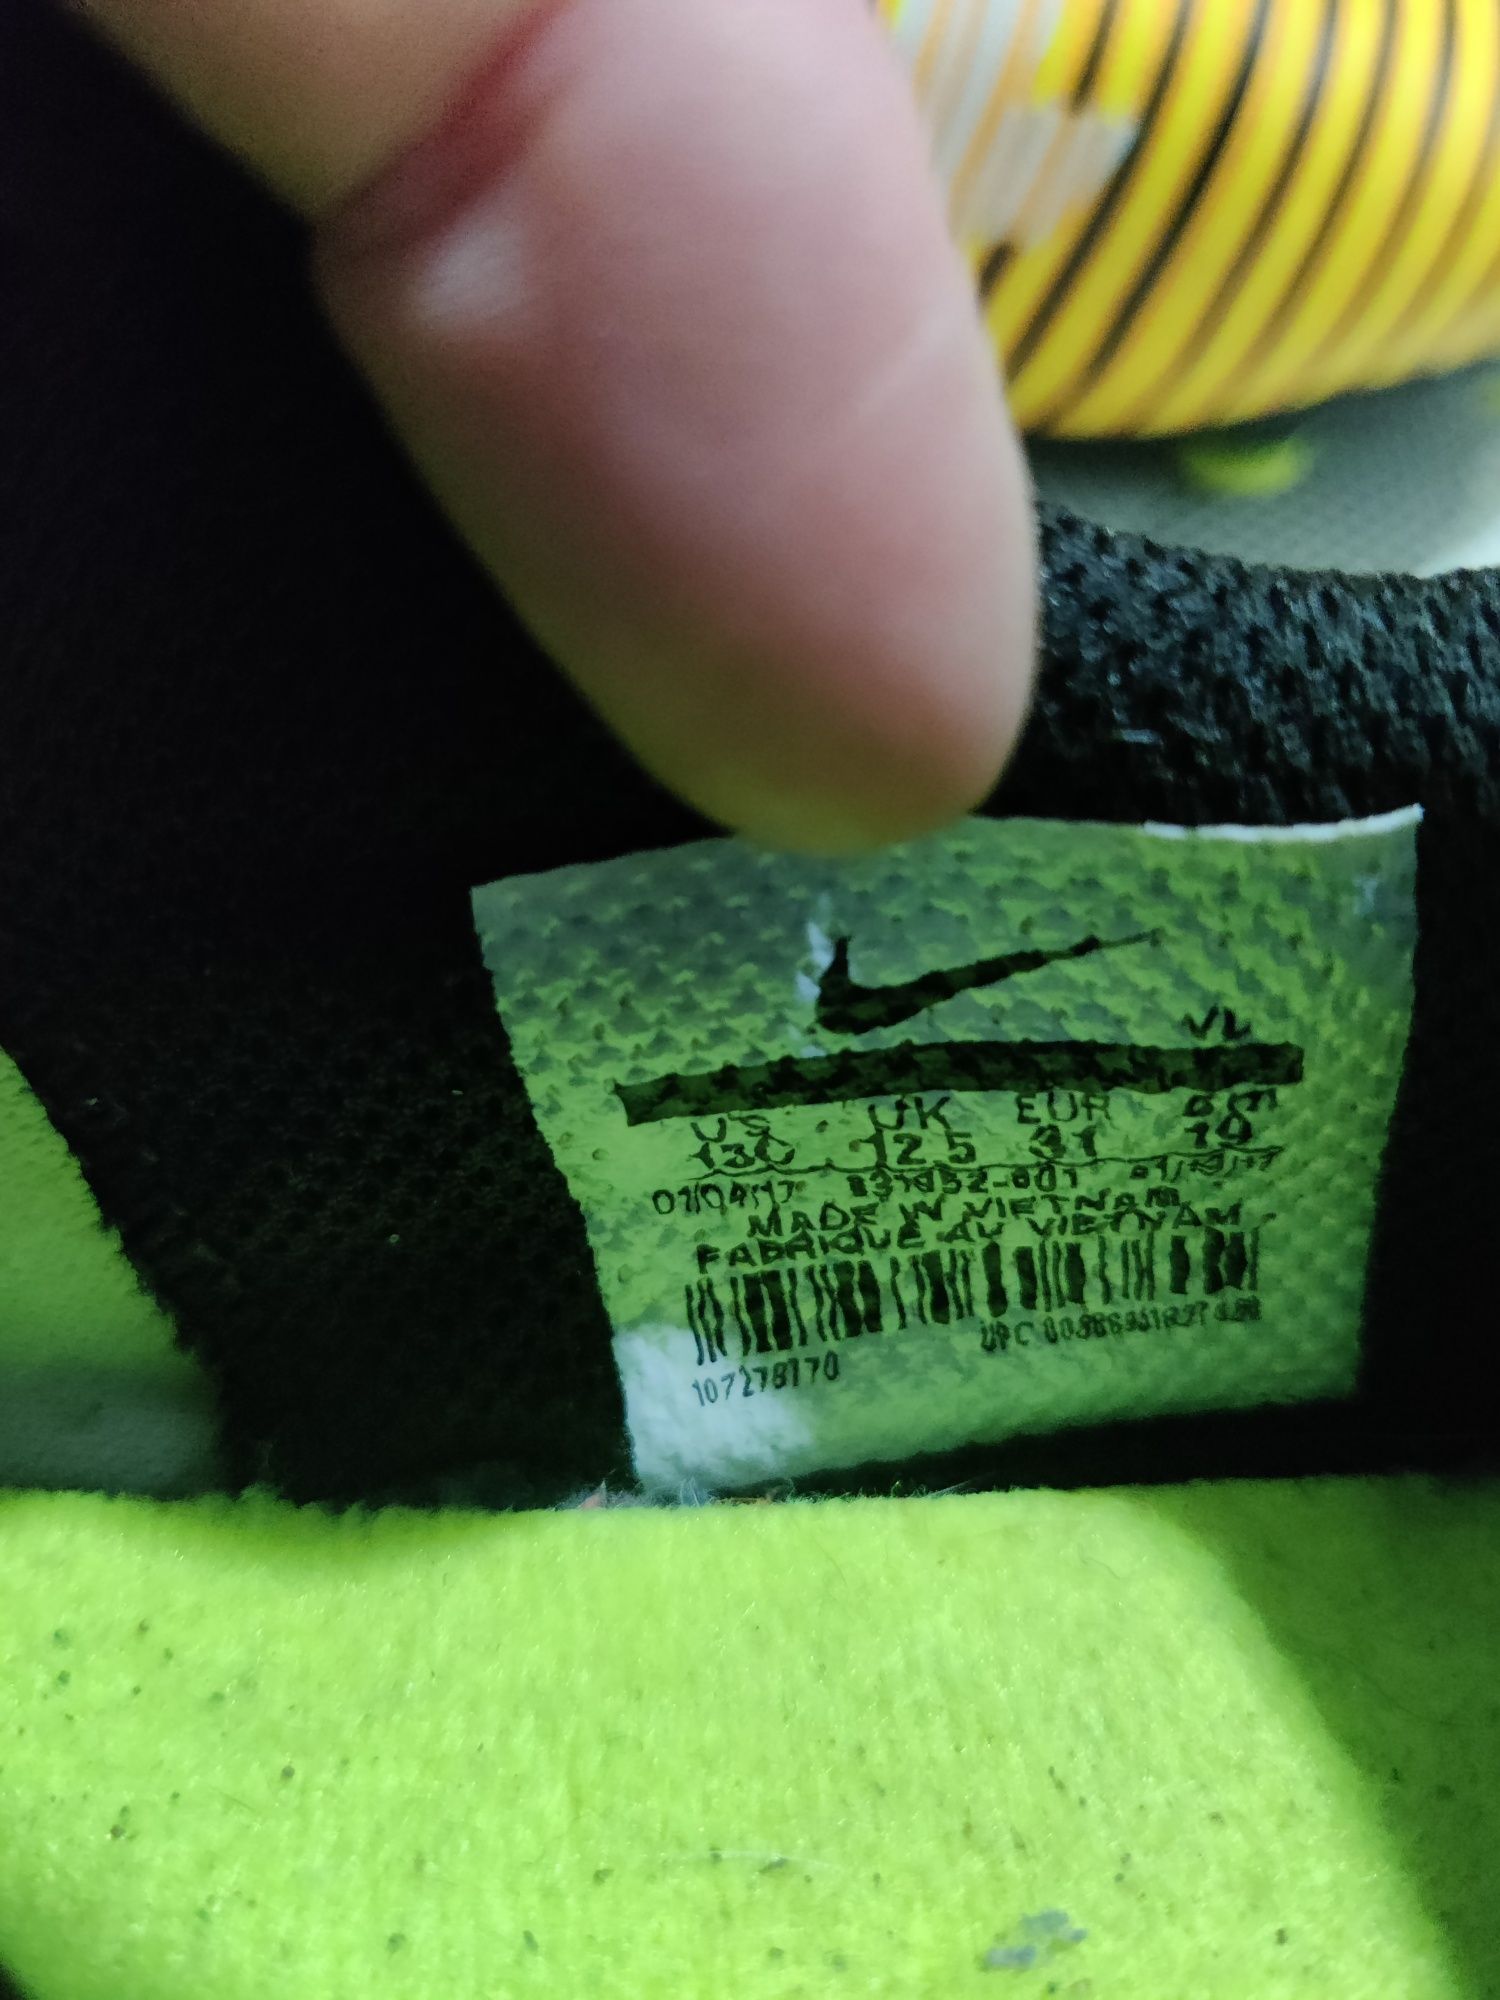 Бутси "Nike Mercurial" оригінал дитячі